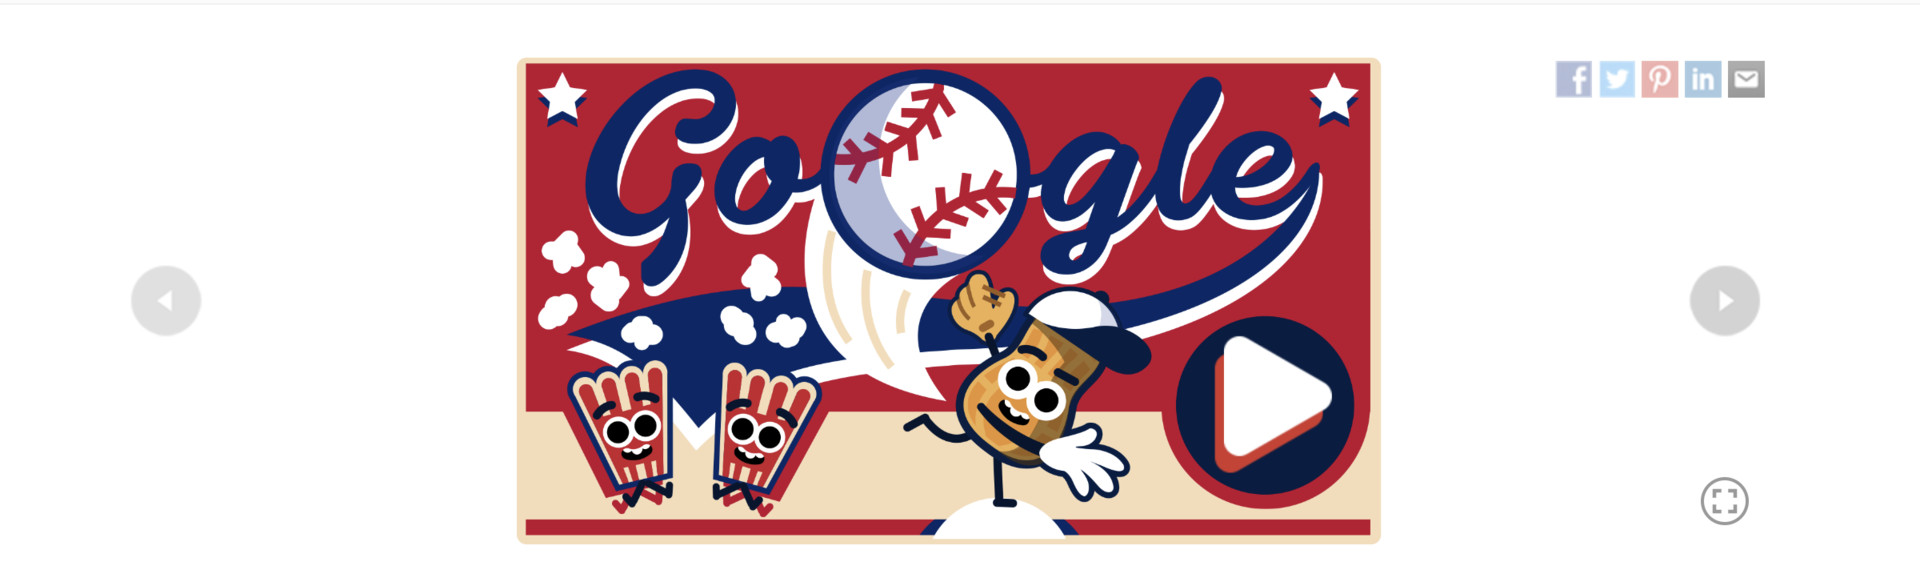 google doodle baseball